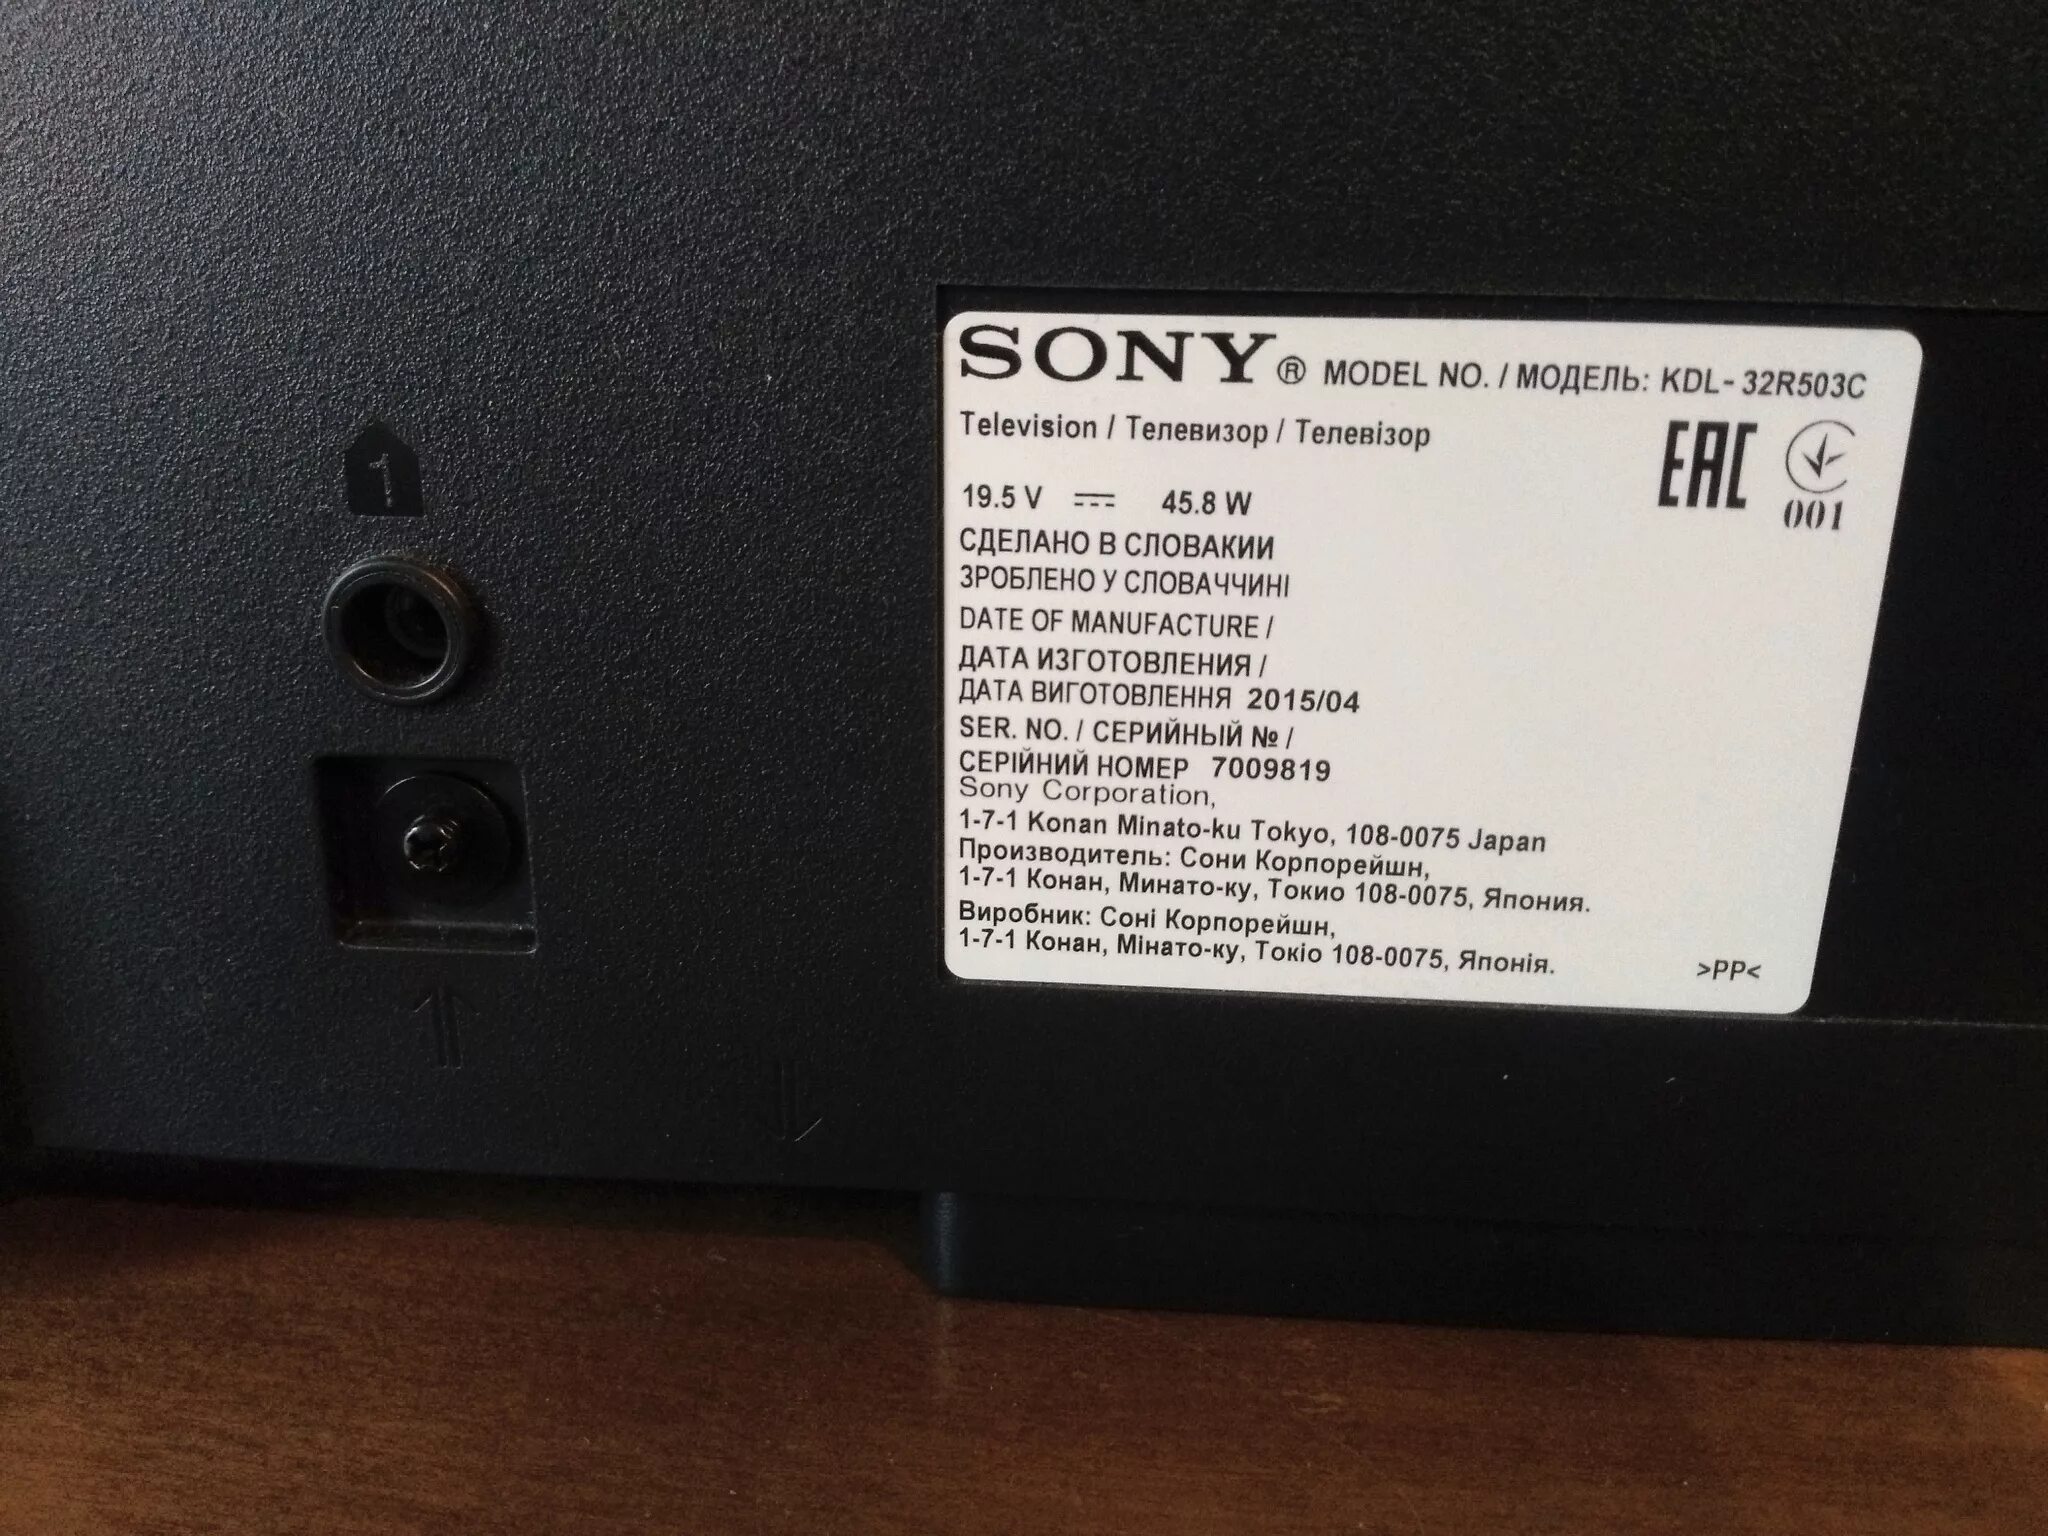 KDL-32r503c. Sony KDL-32r. Sony модель KDL 32r503c. Sony телевизор модель KDL-32r503c. Кдл 32